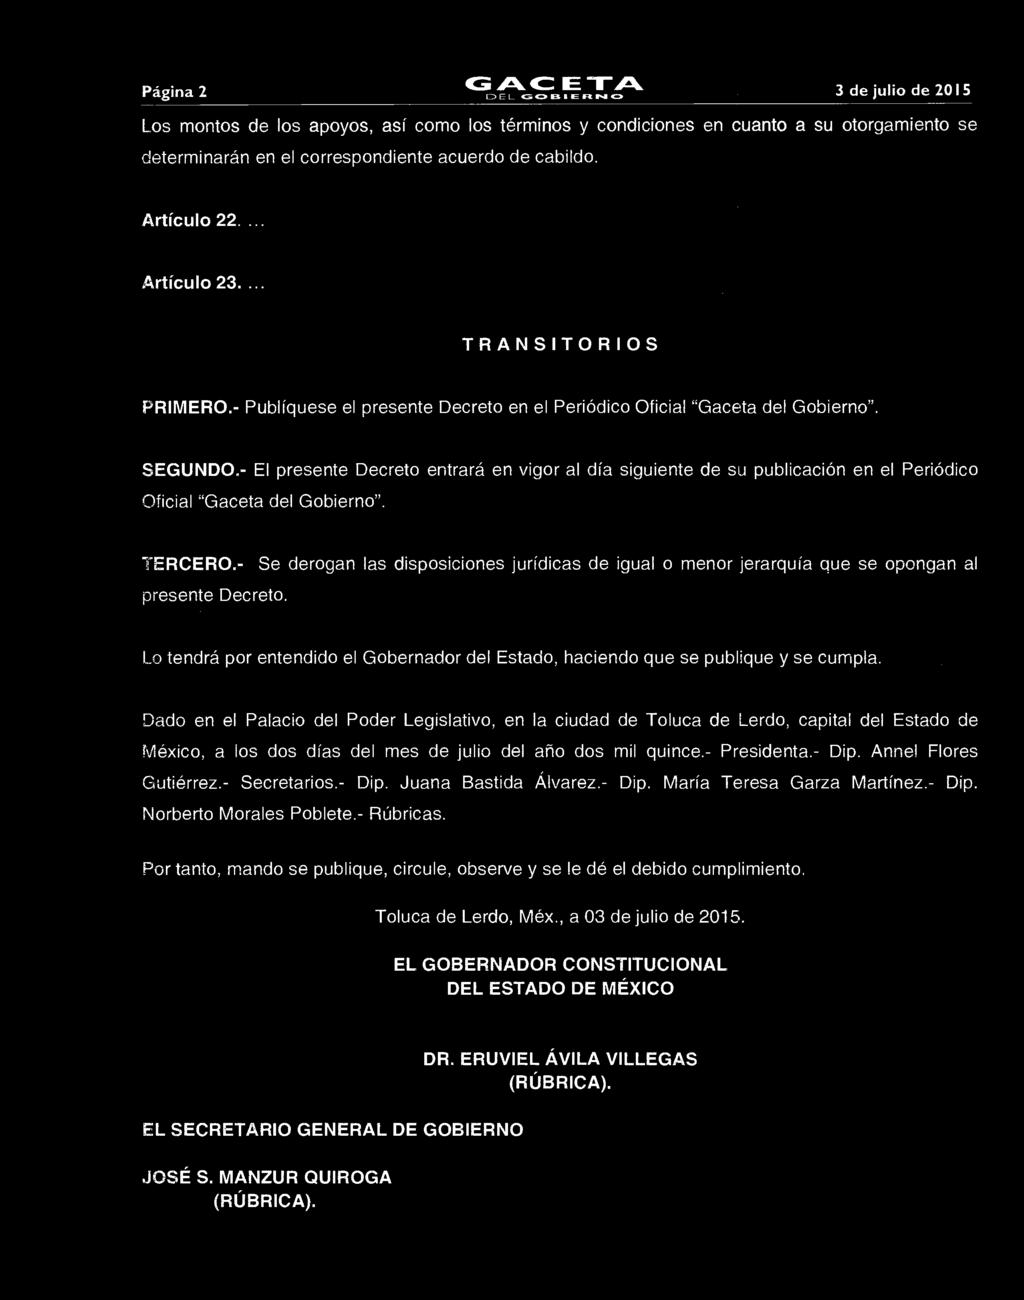 ... Artículo 23.... TRANSITORIOS PRIMERO.- Publíquese el presente Decreto en el Periódico Oficial "Gaceta del Gobierno". SEGUNDO.